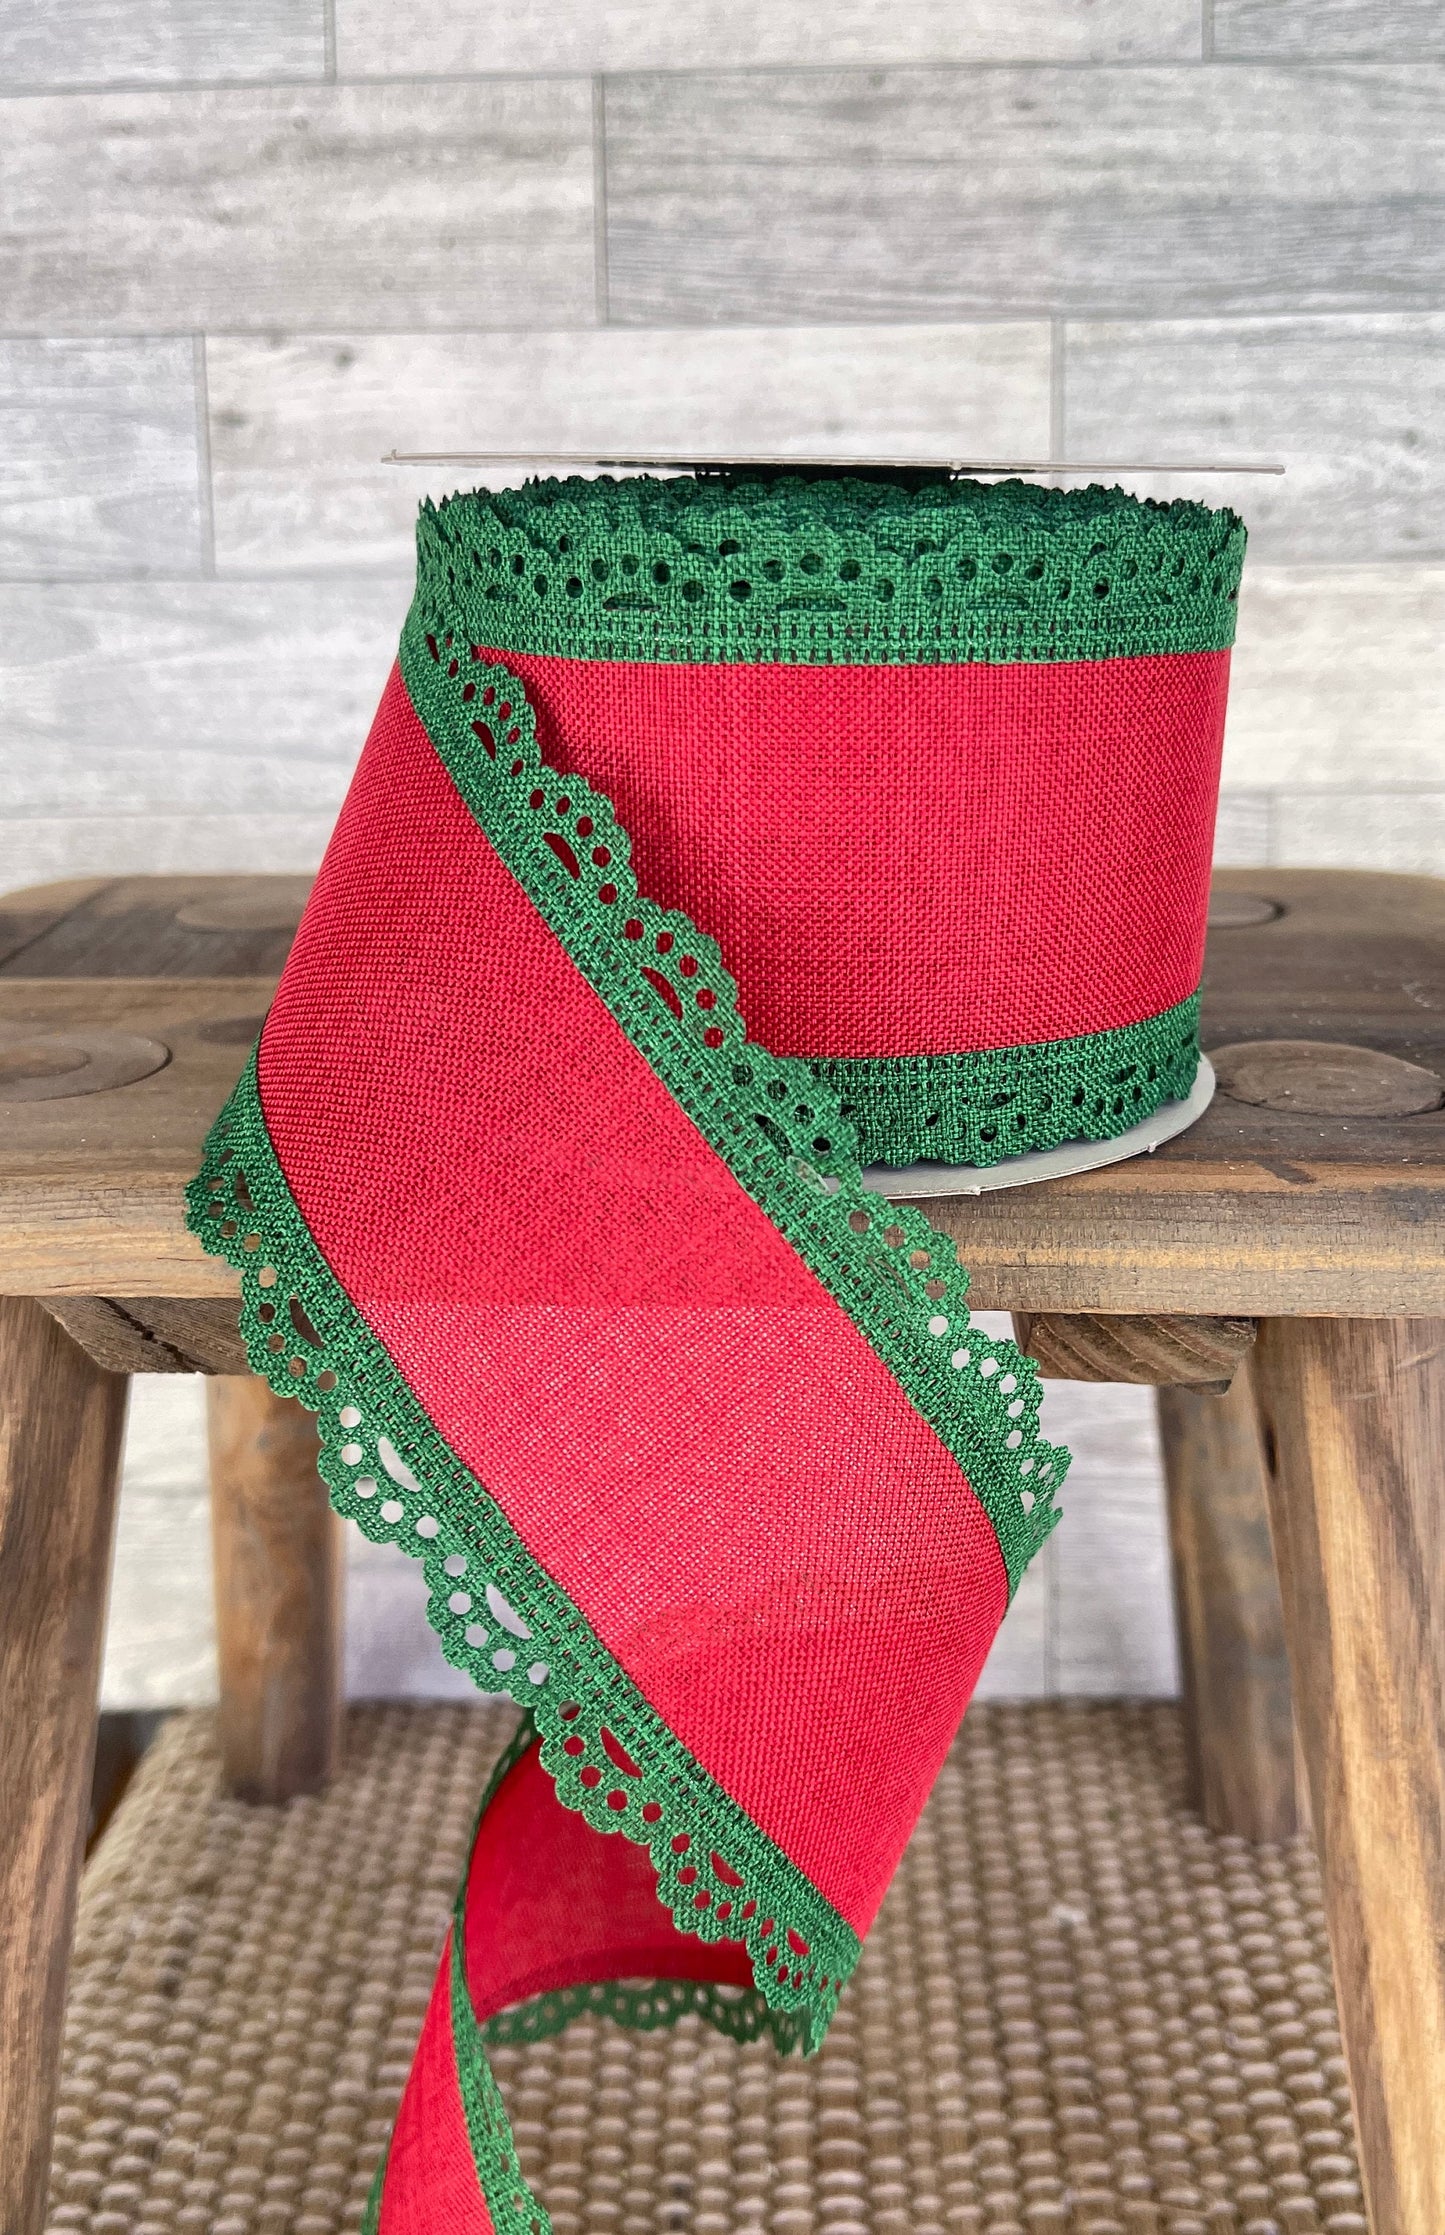 10 YARDS 2.5 inch Ribbon, craft, Christmas Ribbon, Gift Wrap Ribbon, Red Green Ribbon, Scallop Edge Ribbon, Wreath Supplies, Floral Supply